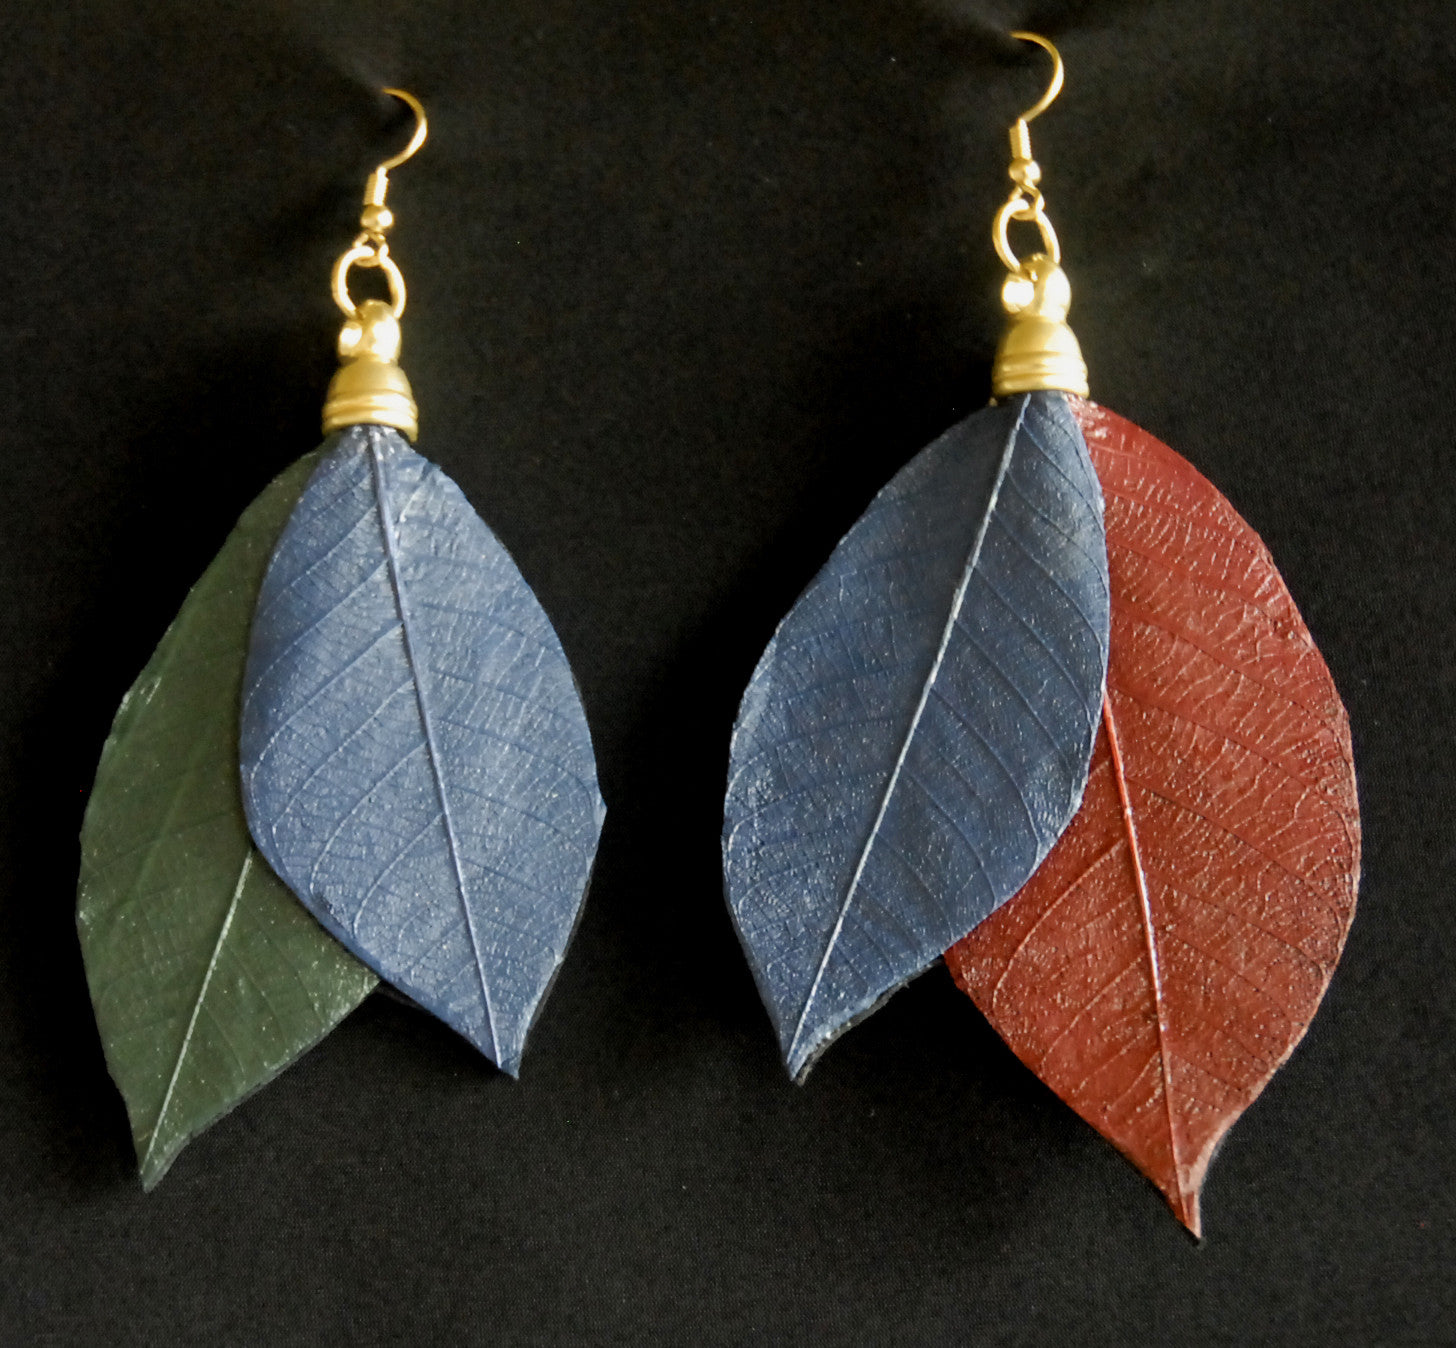 Earrings with leaves